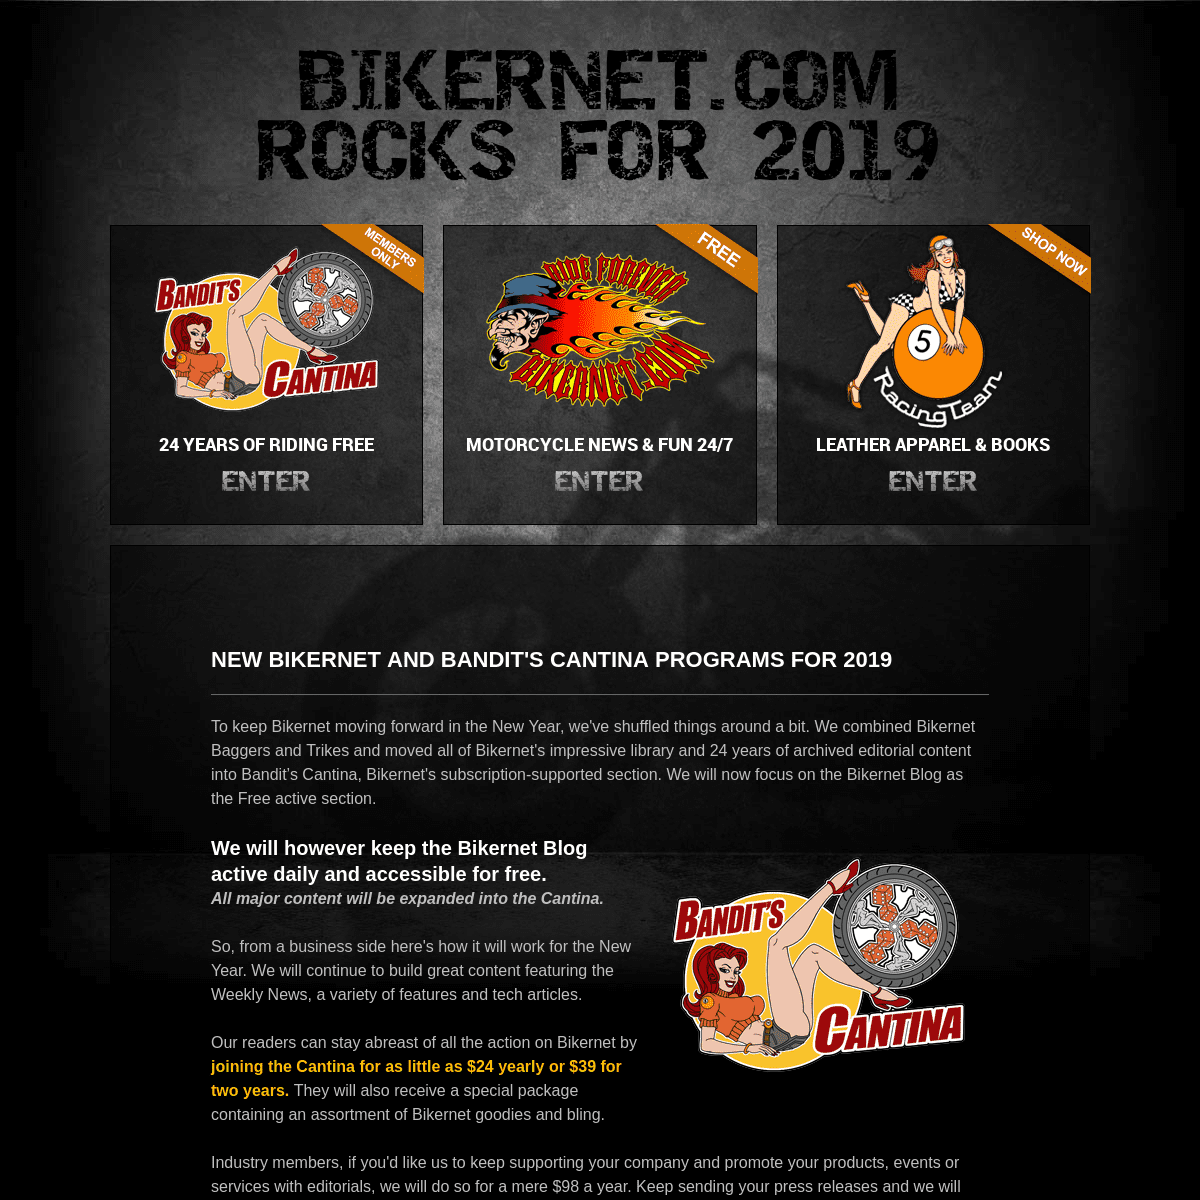 A complete backup of bikernet.com